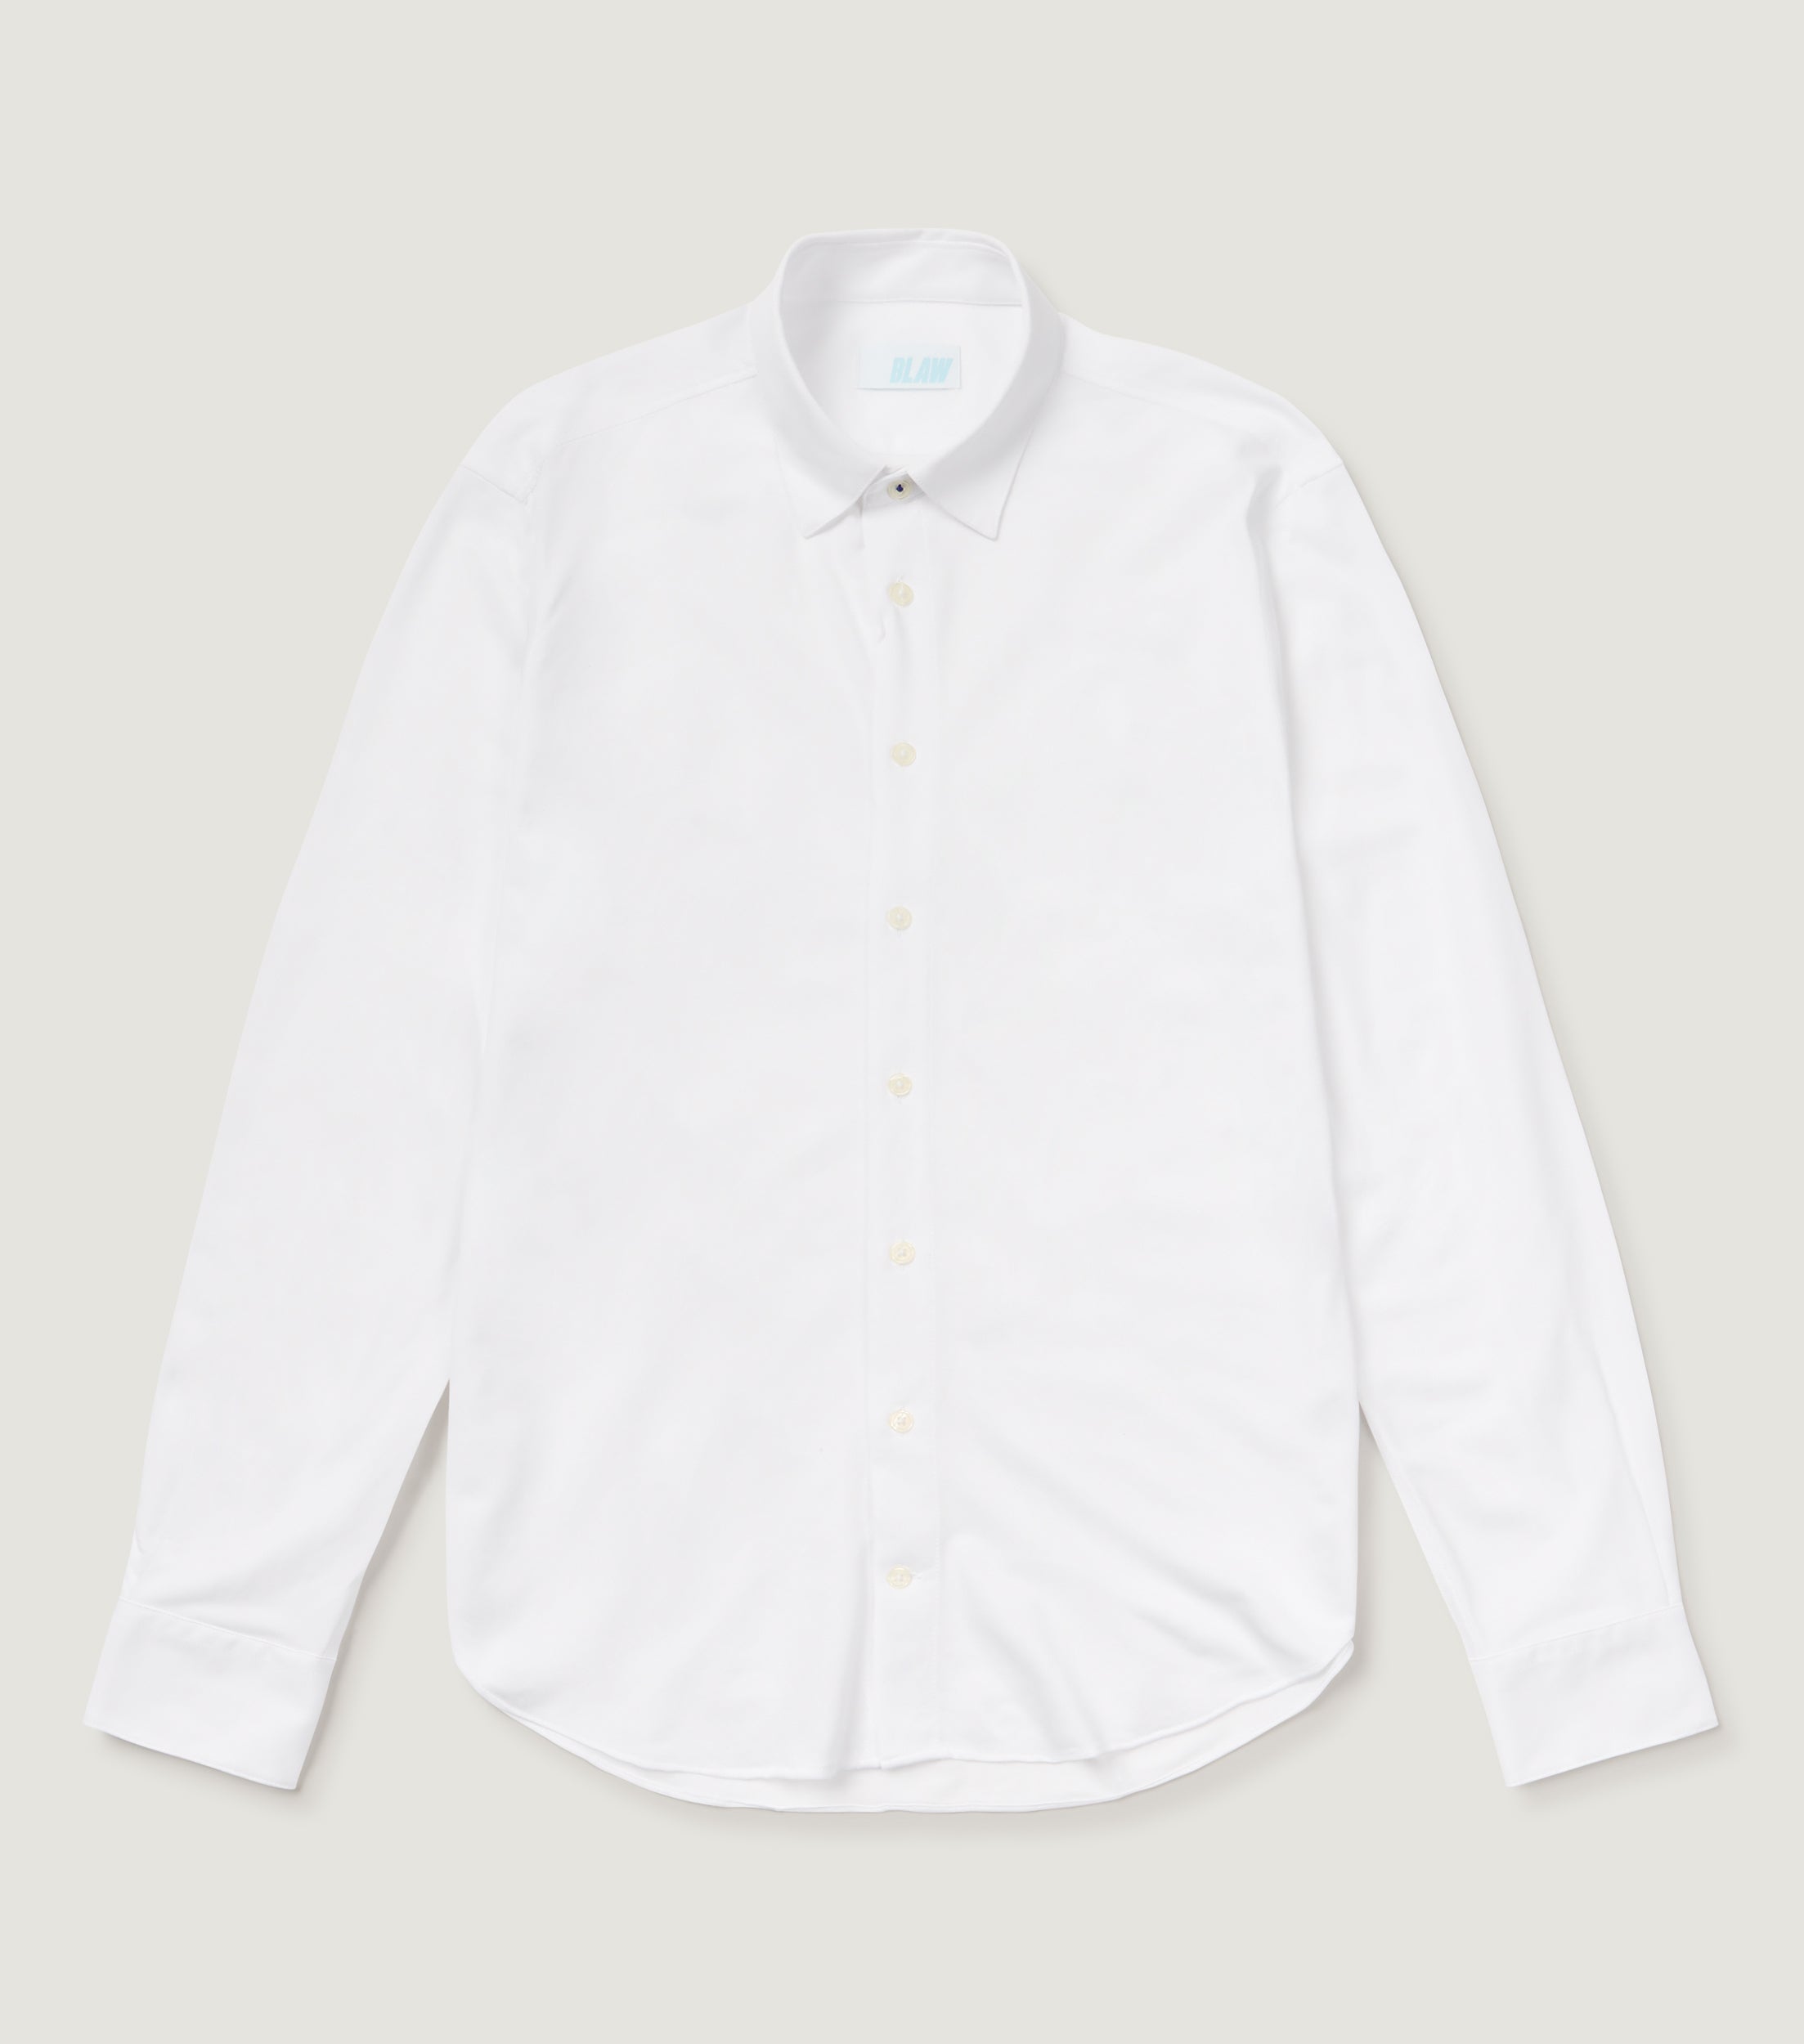 Tech Compact Knit Shirt White - BLAW